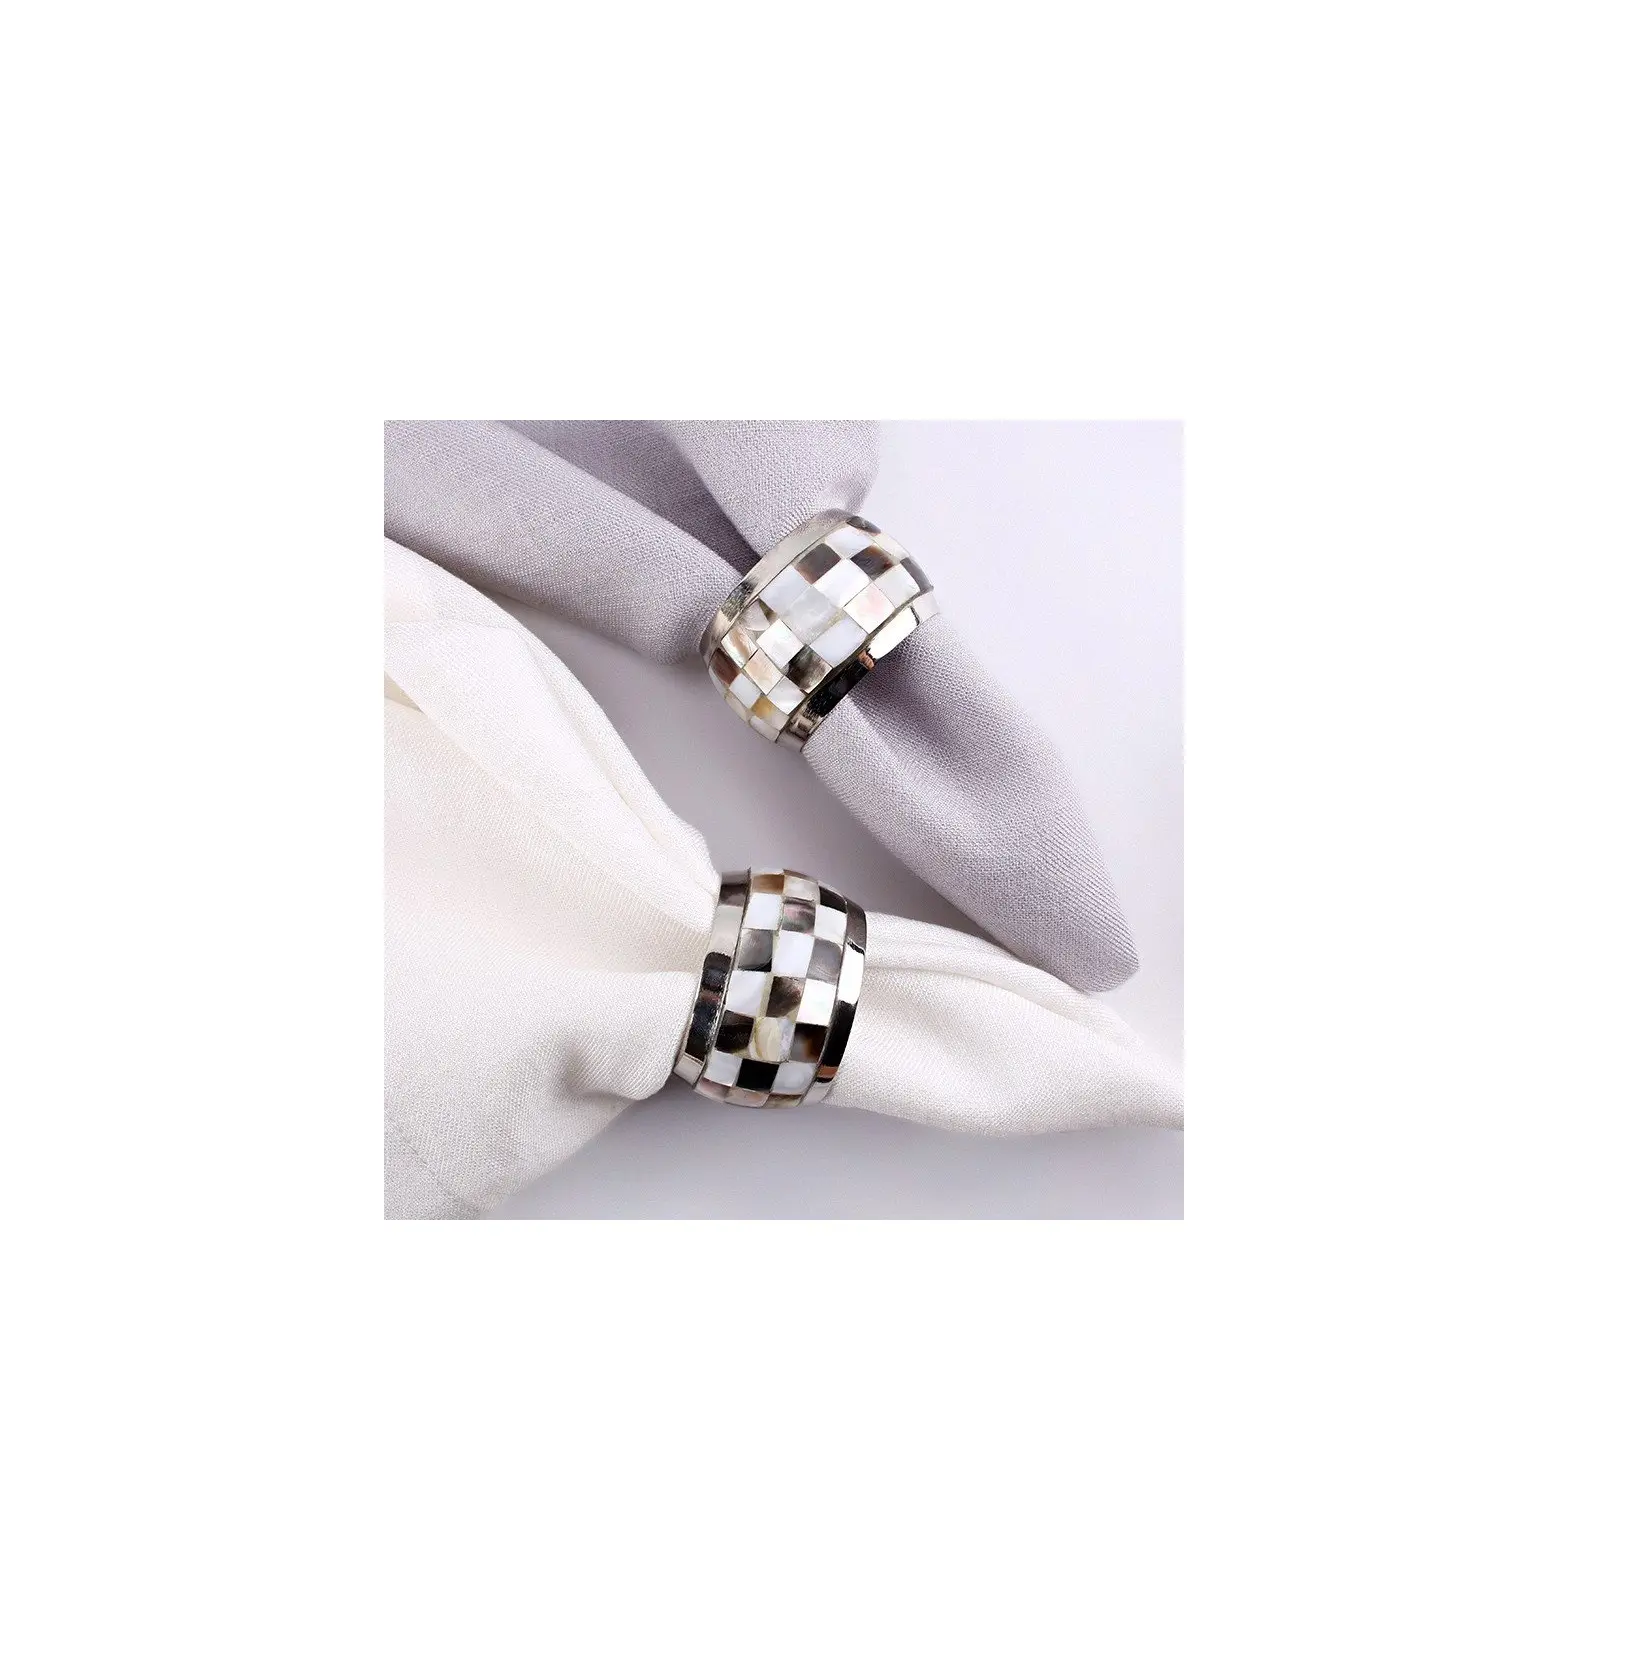 Personalizado mãe de pérola guardanapo anel melhor cor preto e branco tamanho personalizado melhor 2 peça mãe de pérola guardanapo anel